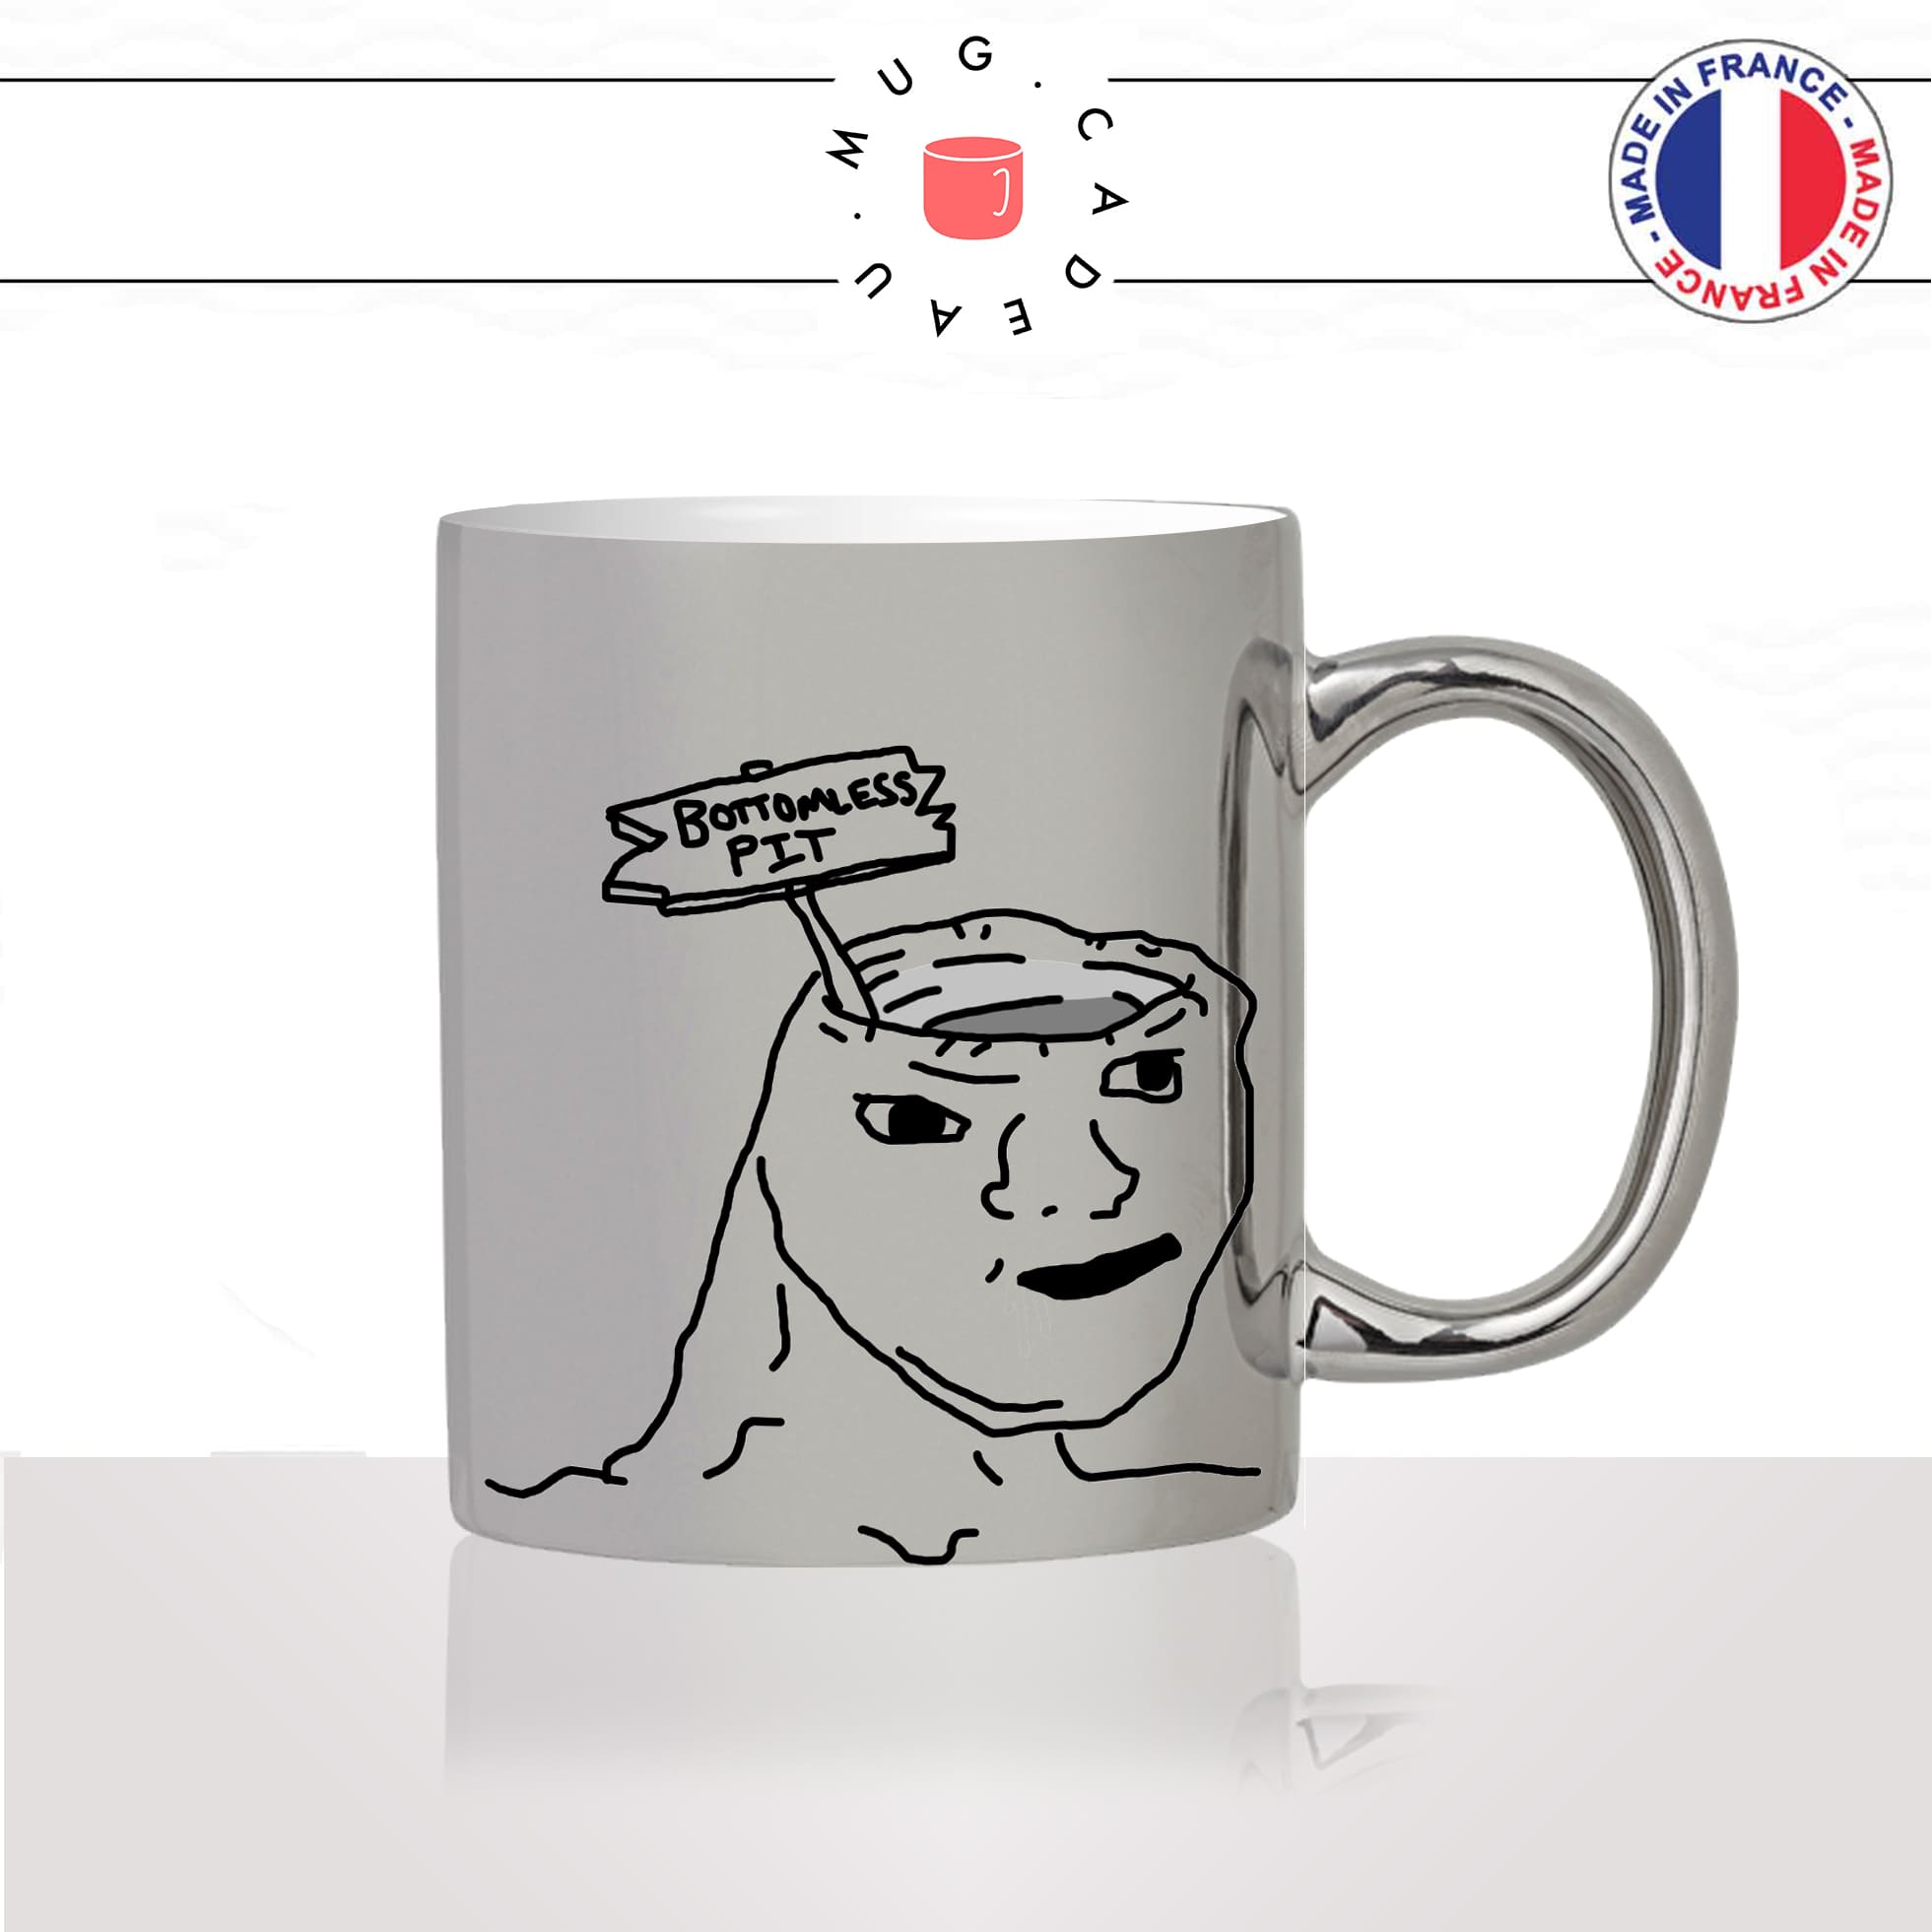 mug-tasse-argent-argenté-silver-bottomless-pit-meme-sans-cerveau-debile-gaming-discord-internet-humour-idée-cadeau-fun-cool-café-thé2